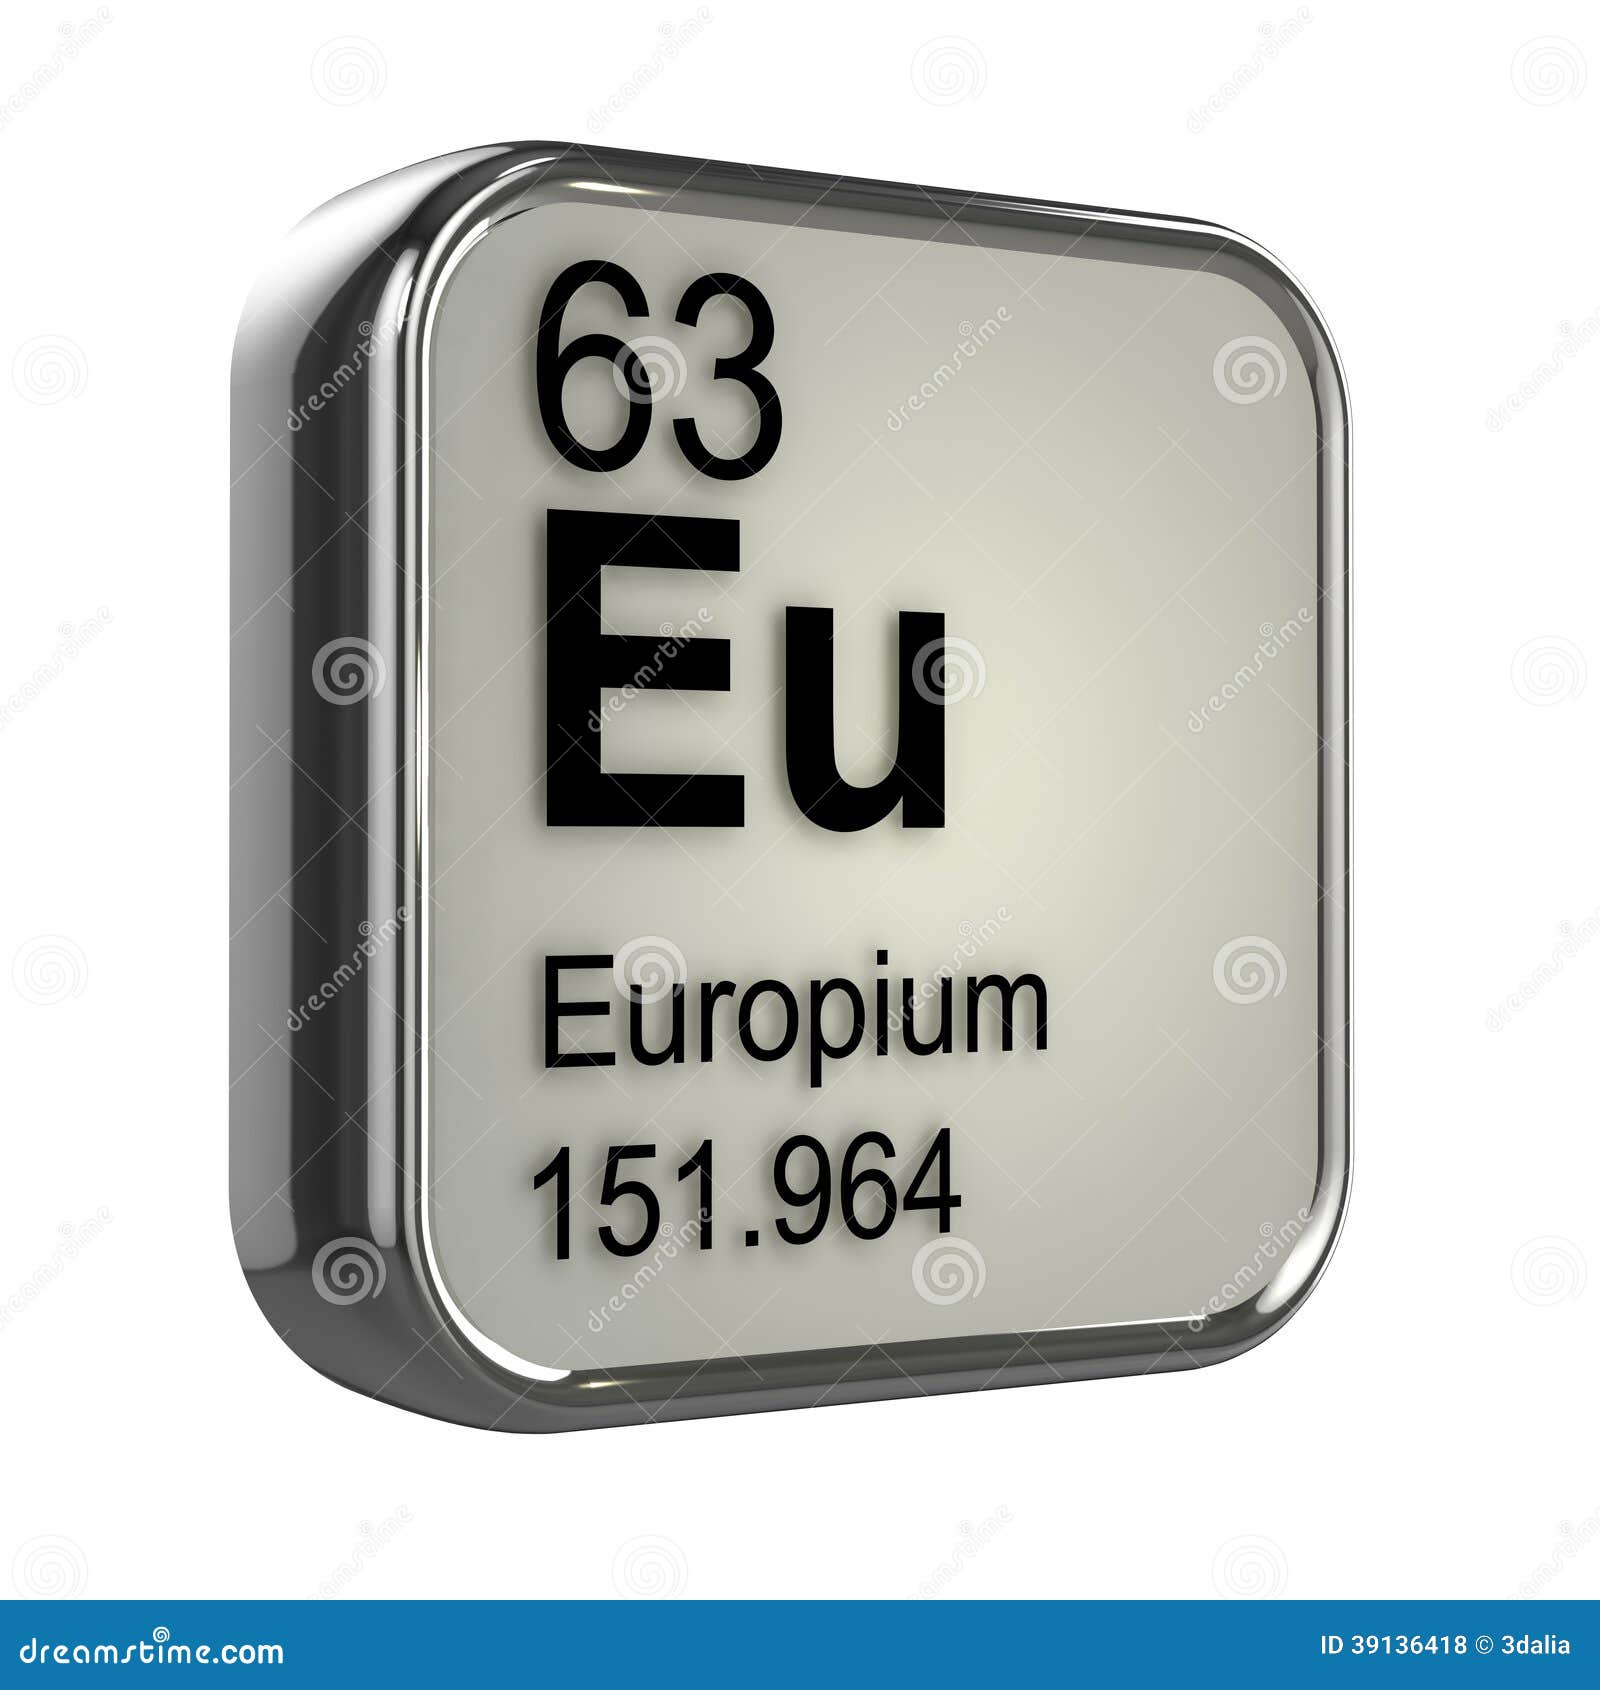 Европий химический элемент. Иттербий элемент. Тербий химический элемент. Иттербий в таблице Менделеева. Торий химический элемент.